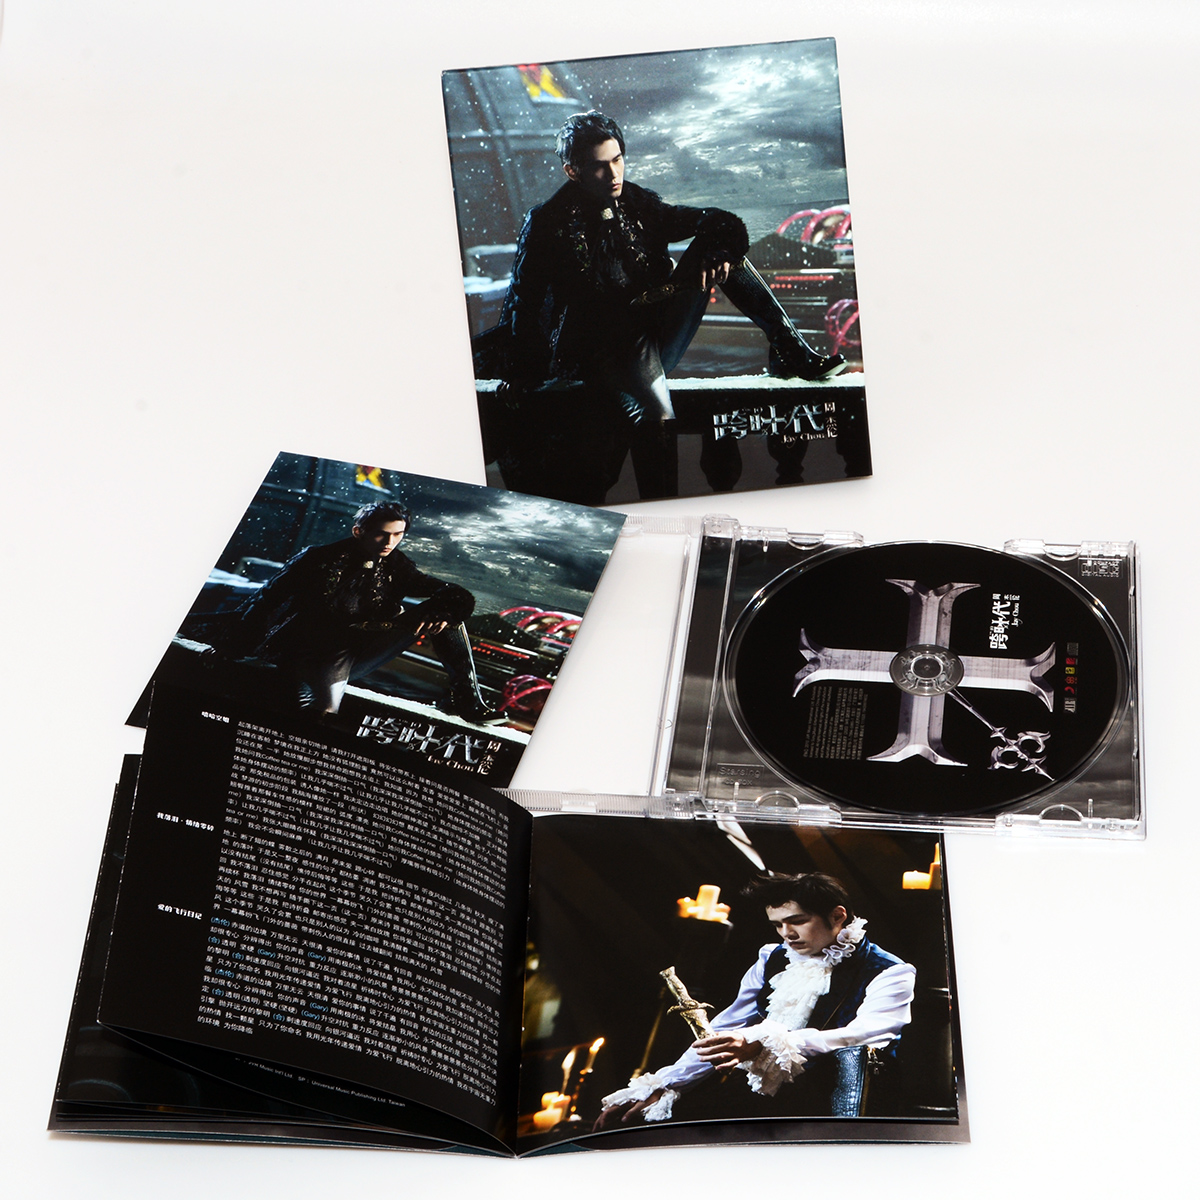 正版专辑 碟片 周杰伦 跨时代 CD+歌词册 流行音乐光盘 嘻哈空姐 - 图1